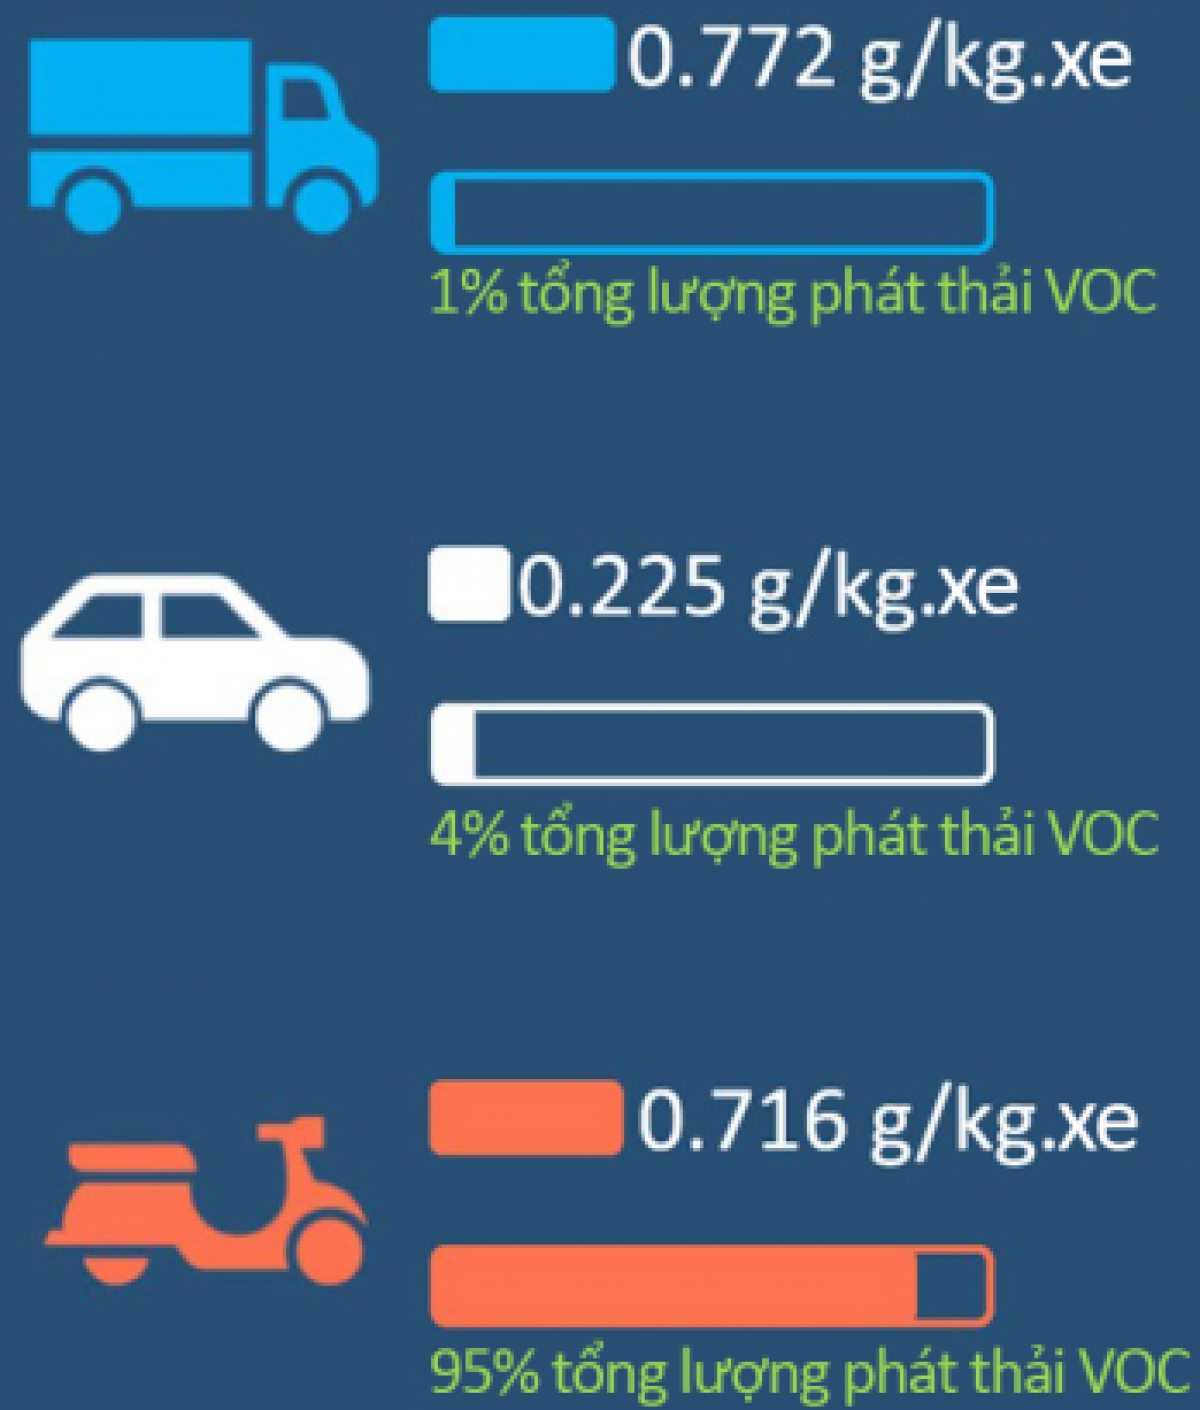 Lượng phát thải VOC từ giao thông của Hà Nội
(Nguồn: Thủy và cộng sự 2020 )